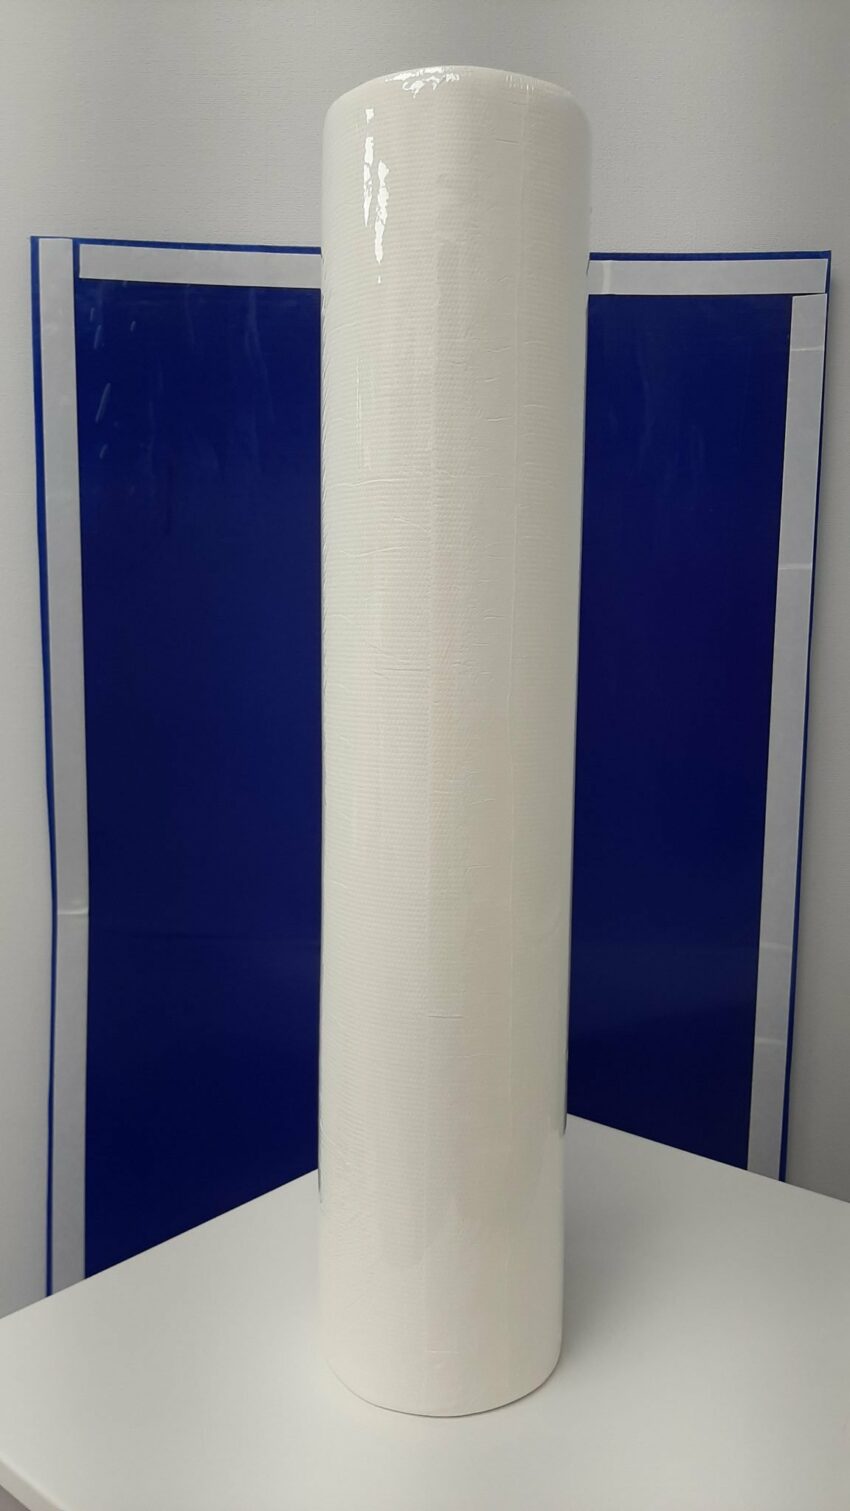 Papīra palagi "Papernet Over Soft", 50 m, 2 slāņi, art. 419287 ar antibakteriālo iedarbību (Sofidel) 4